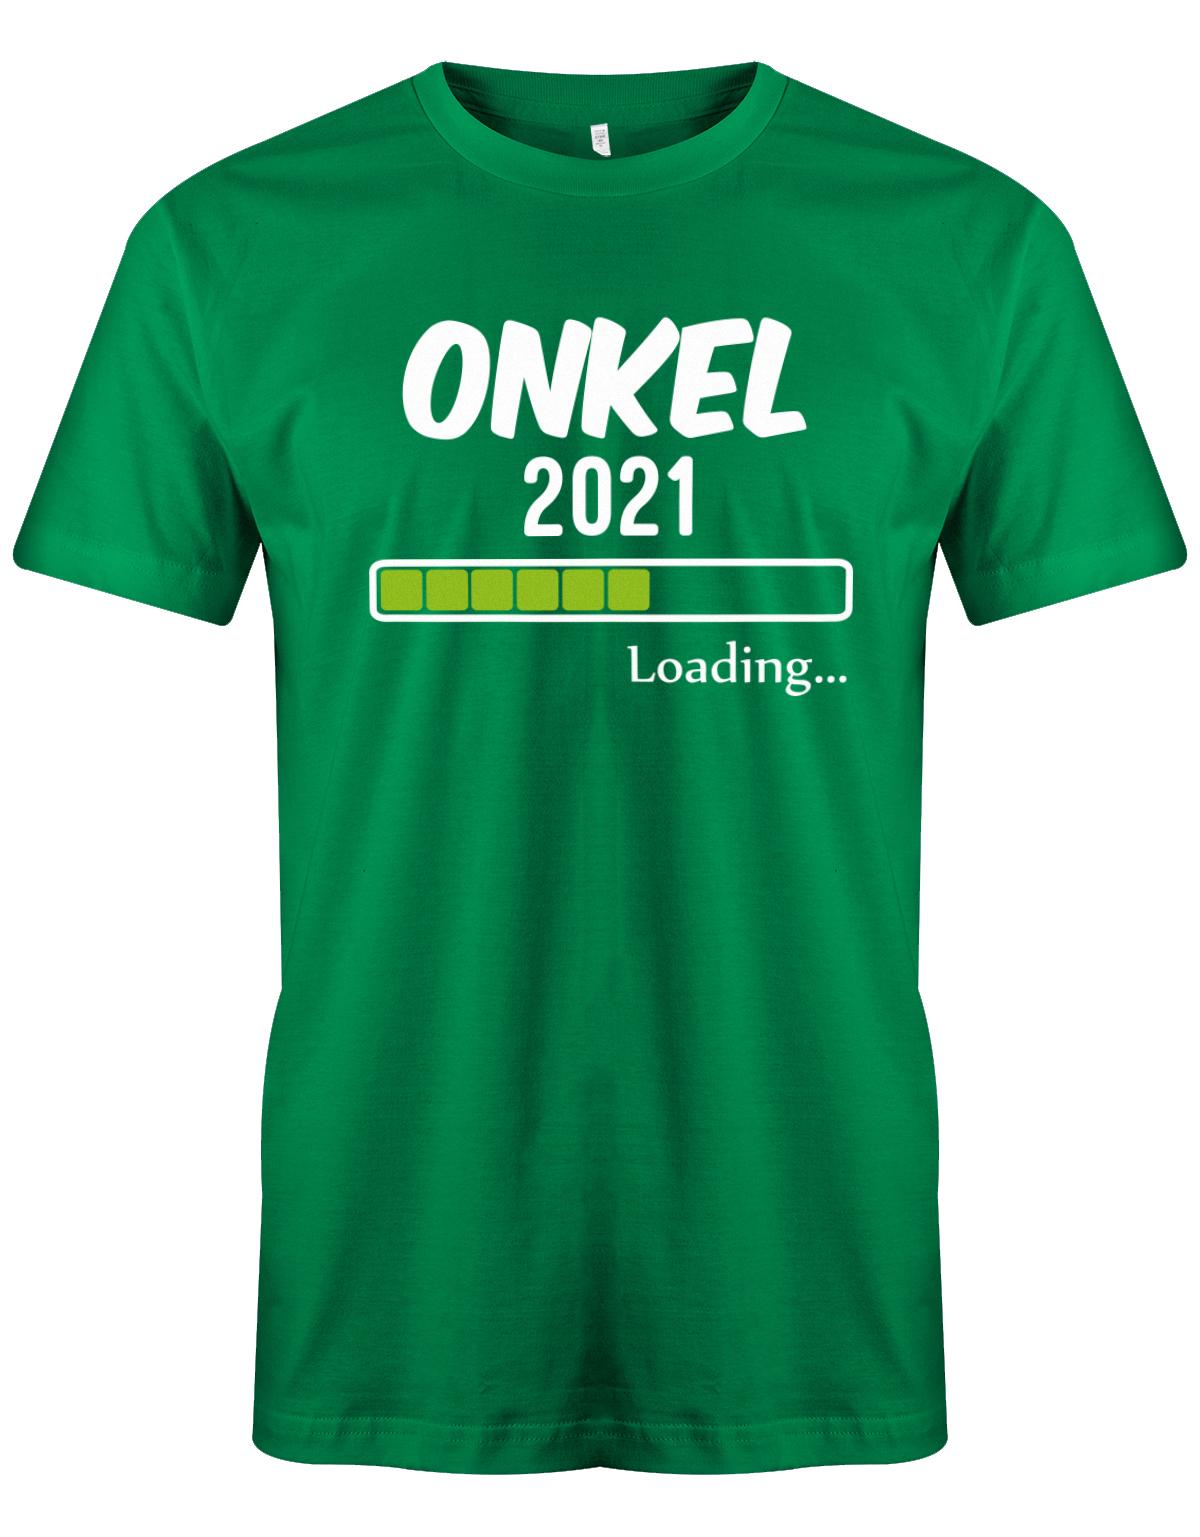 Onkel-loading-2021-Herren-Shirt-Gr-n